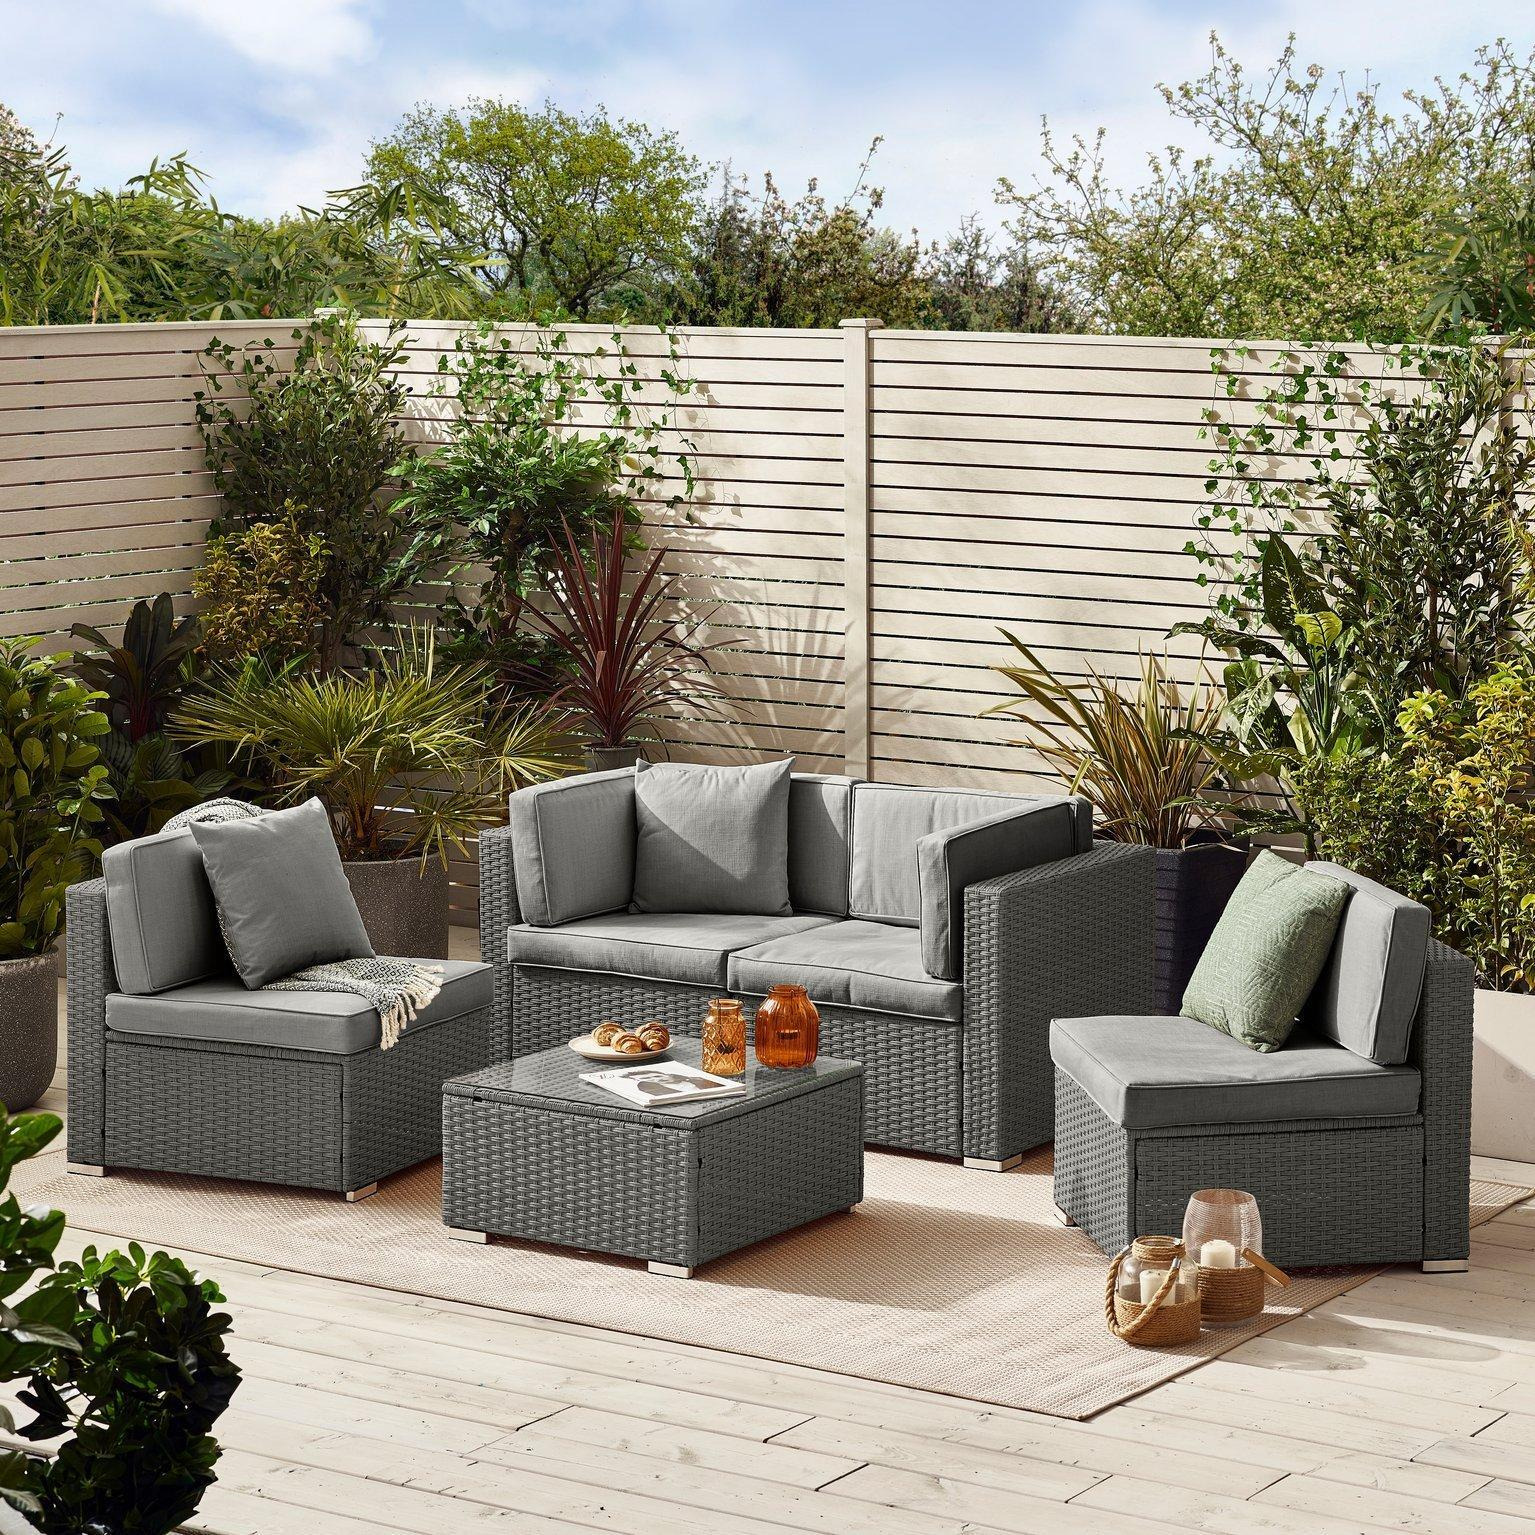 Orlando 4 Seat Modular Outdoor Garden Sofa - Rattan Garden Sofa with Thick Cushions - Garden Coffee Table - image 1